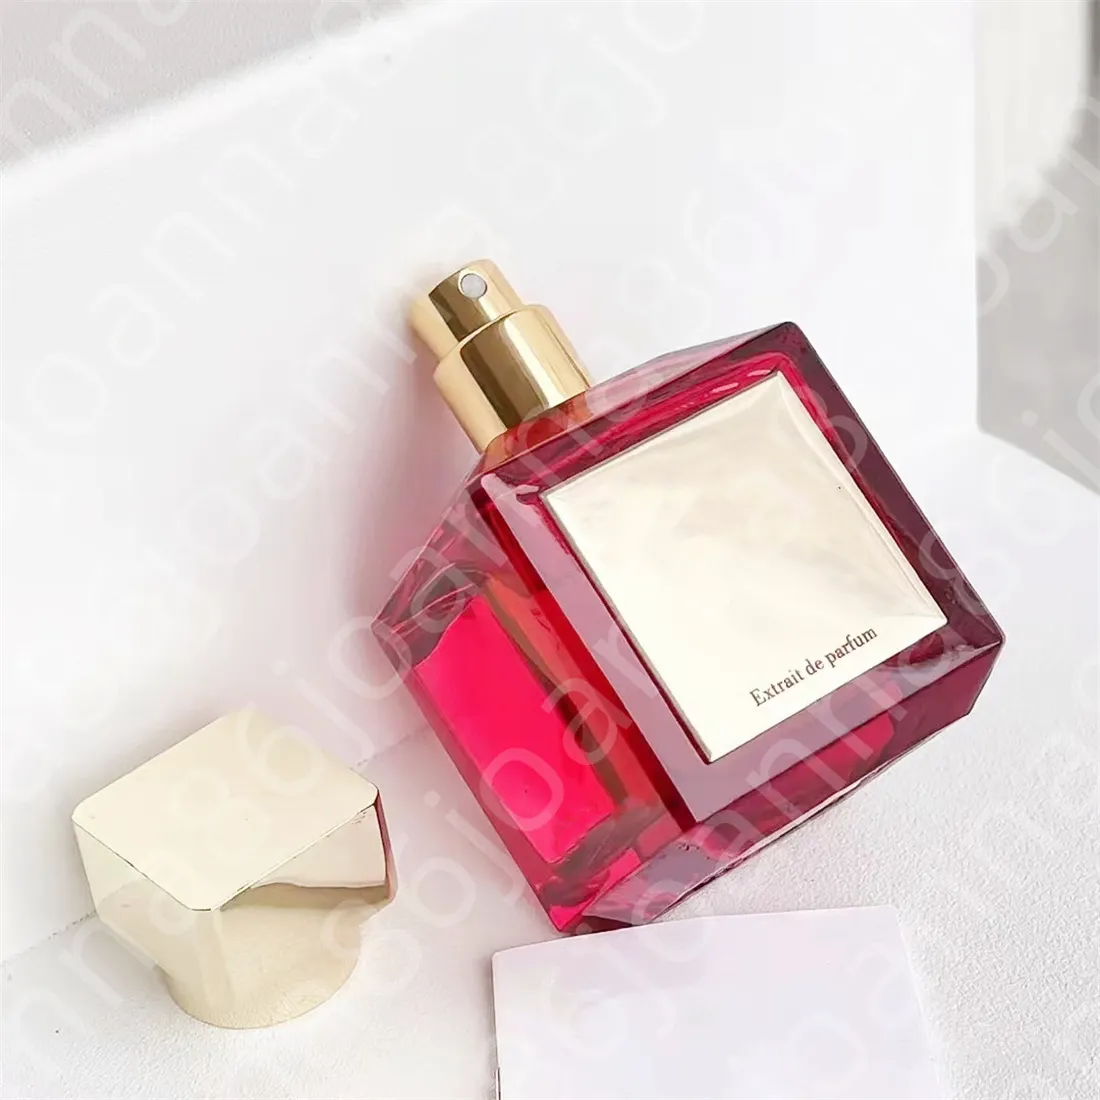 Hot Sales Factory Bezpośrednie neutralne perfumy 70 ml oud 540 trwałe aromatyczne zapach zapachowy dezodorant szybki statek